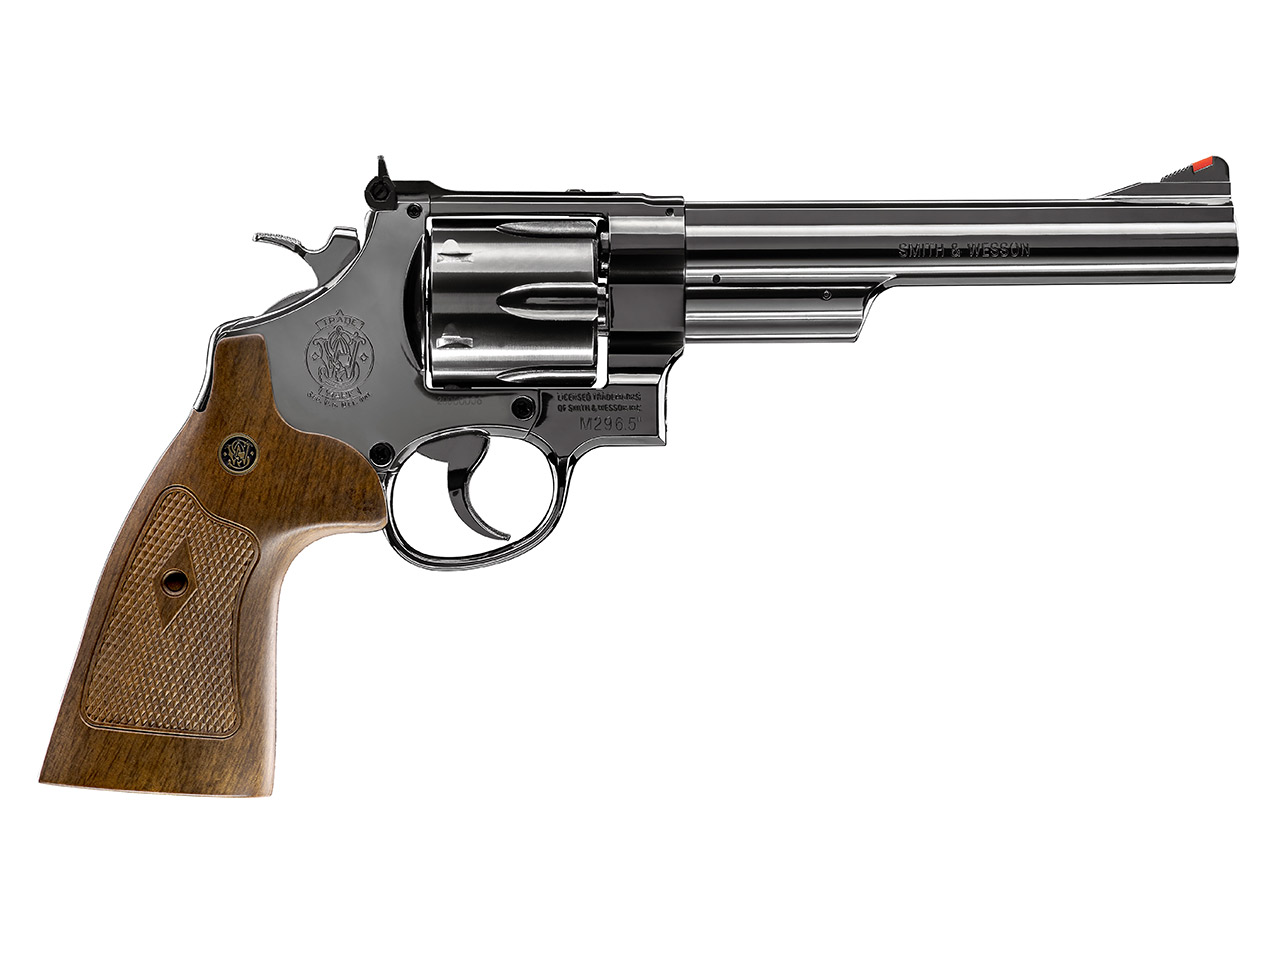 CO2 Revolver Smith & Wesson M29 6.5 Zoll hochglanzbrüniert braune Griffschalen Kaliber 4,5 mm Diabolo (P18)